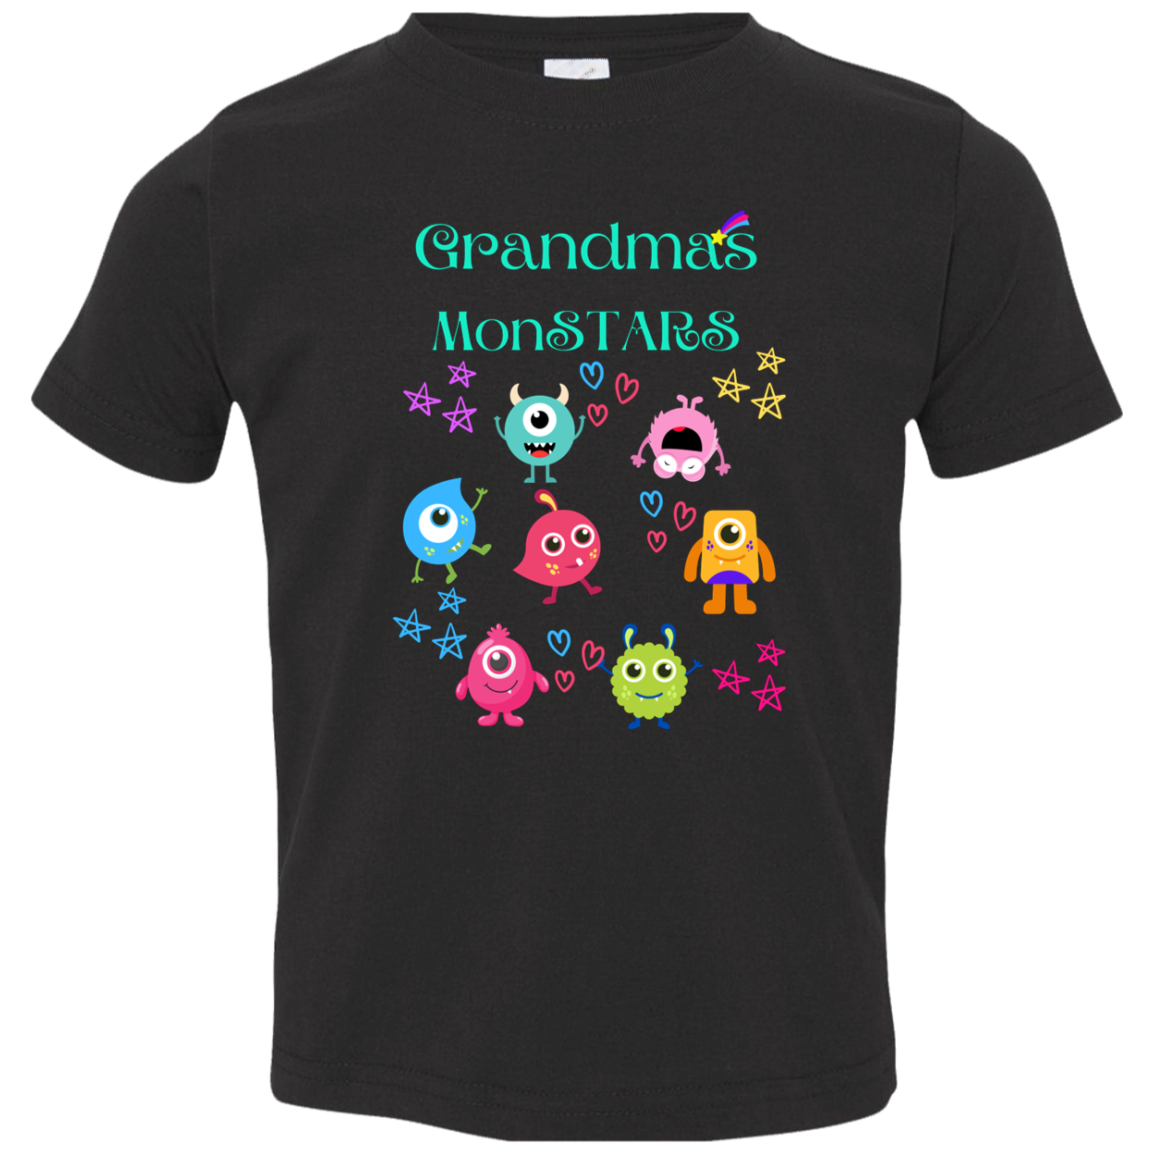 Granddads MonSTARS toddler Jersey T-Shirt